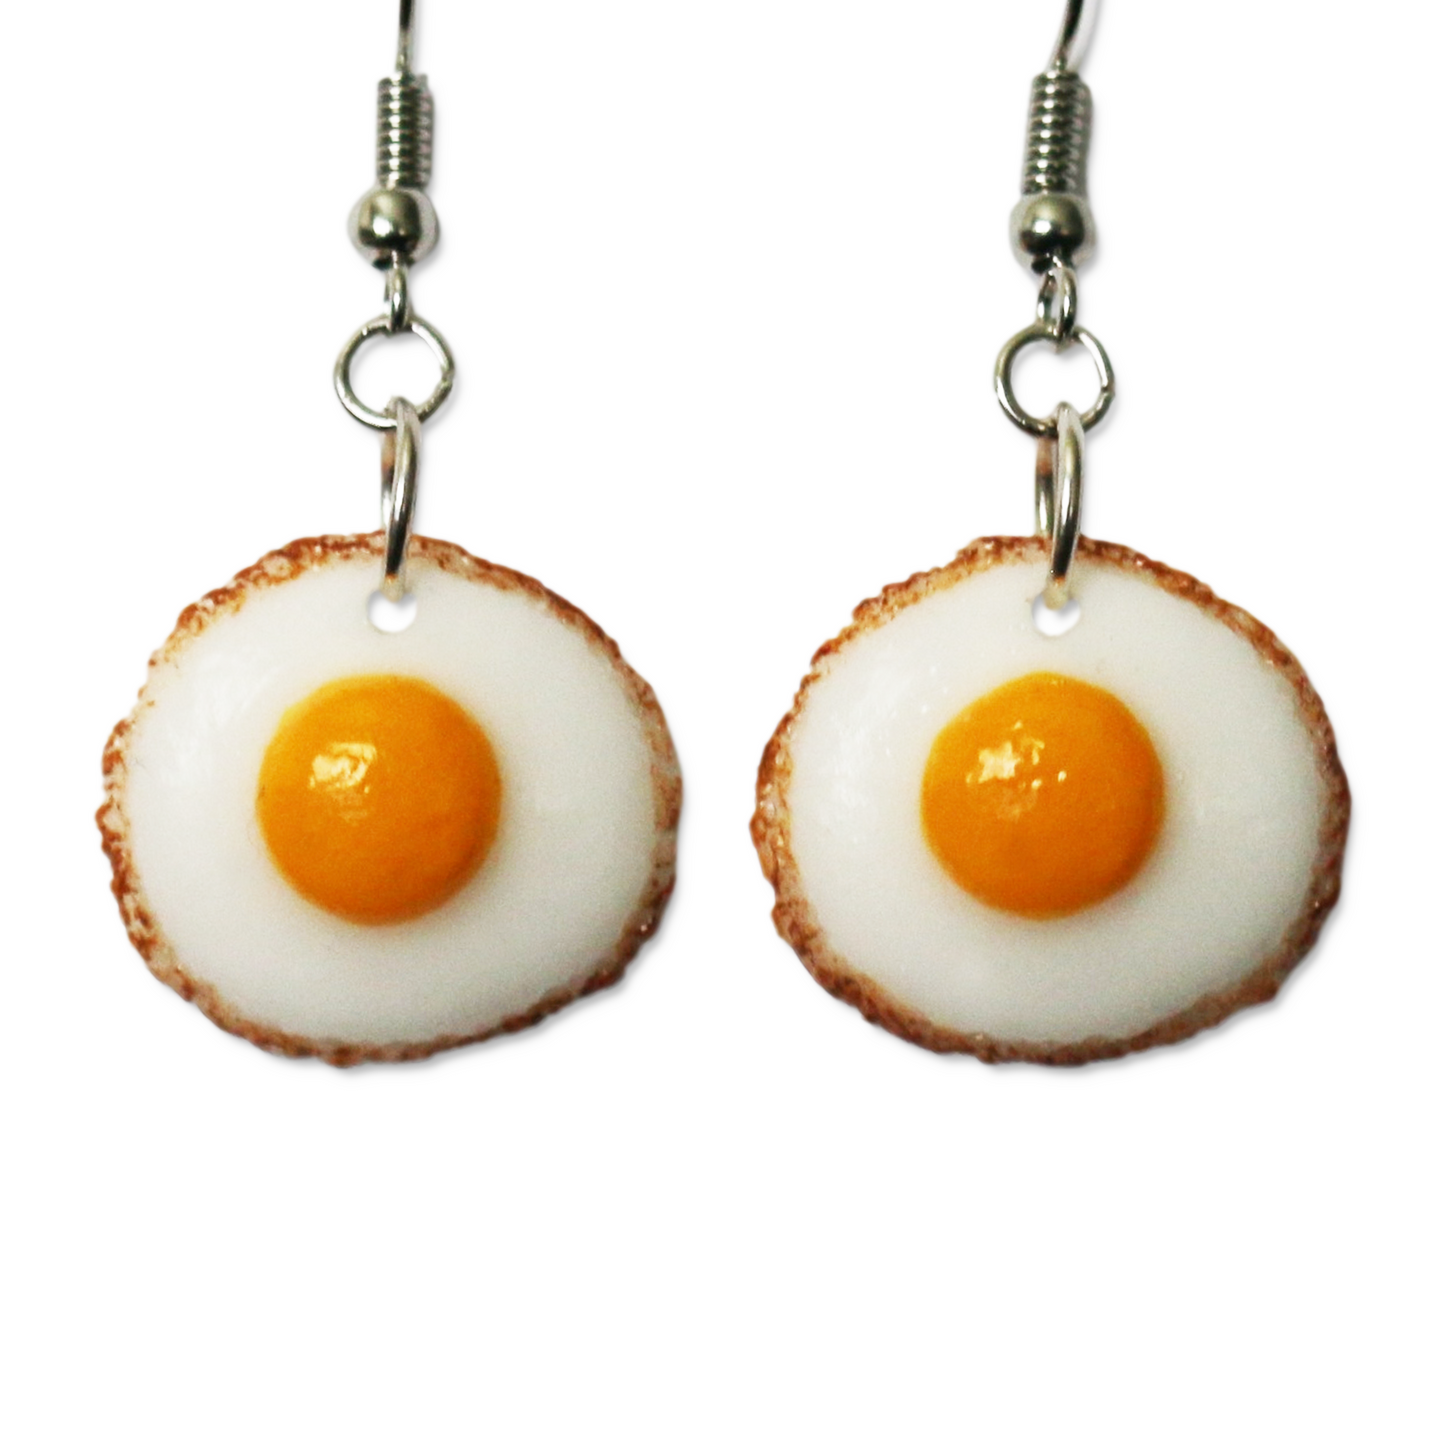 Sunny Side Up Egg Earrings - EJ0006